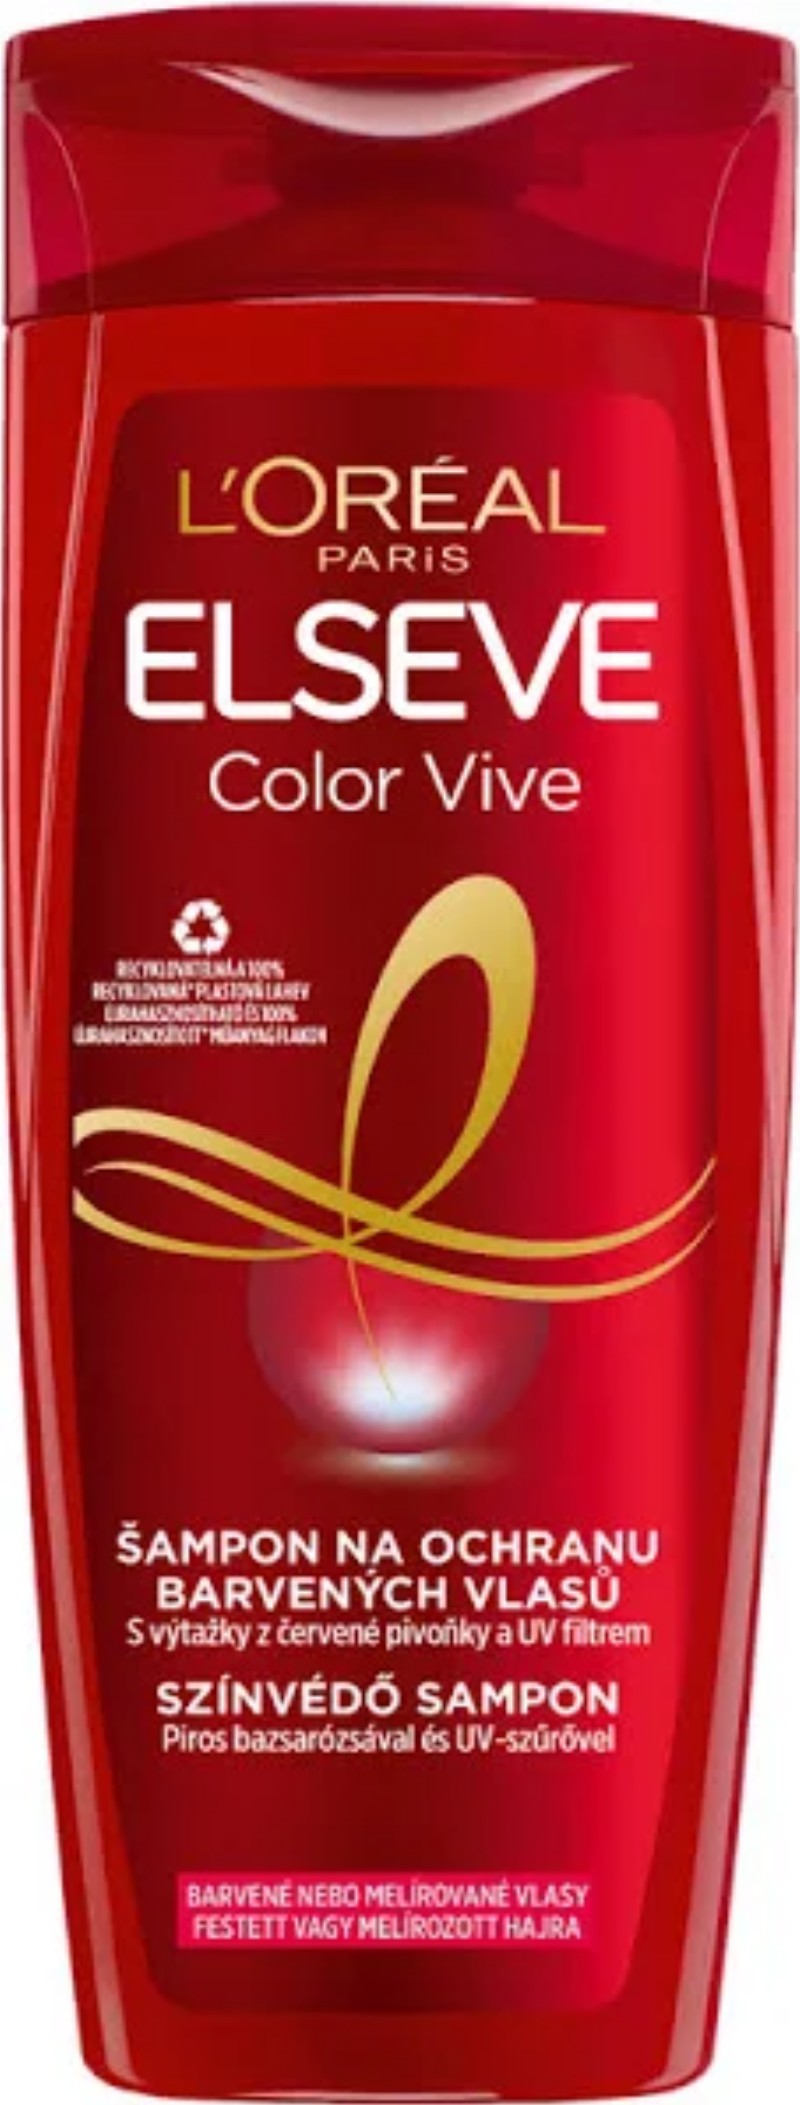 Sampon Elseve L'OREAL Color Vive 400ml